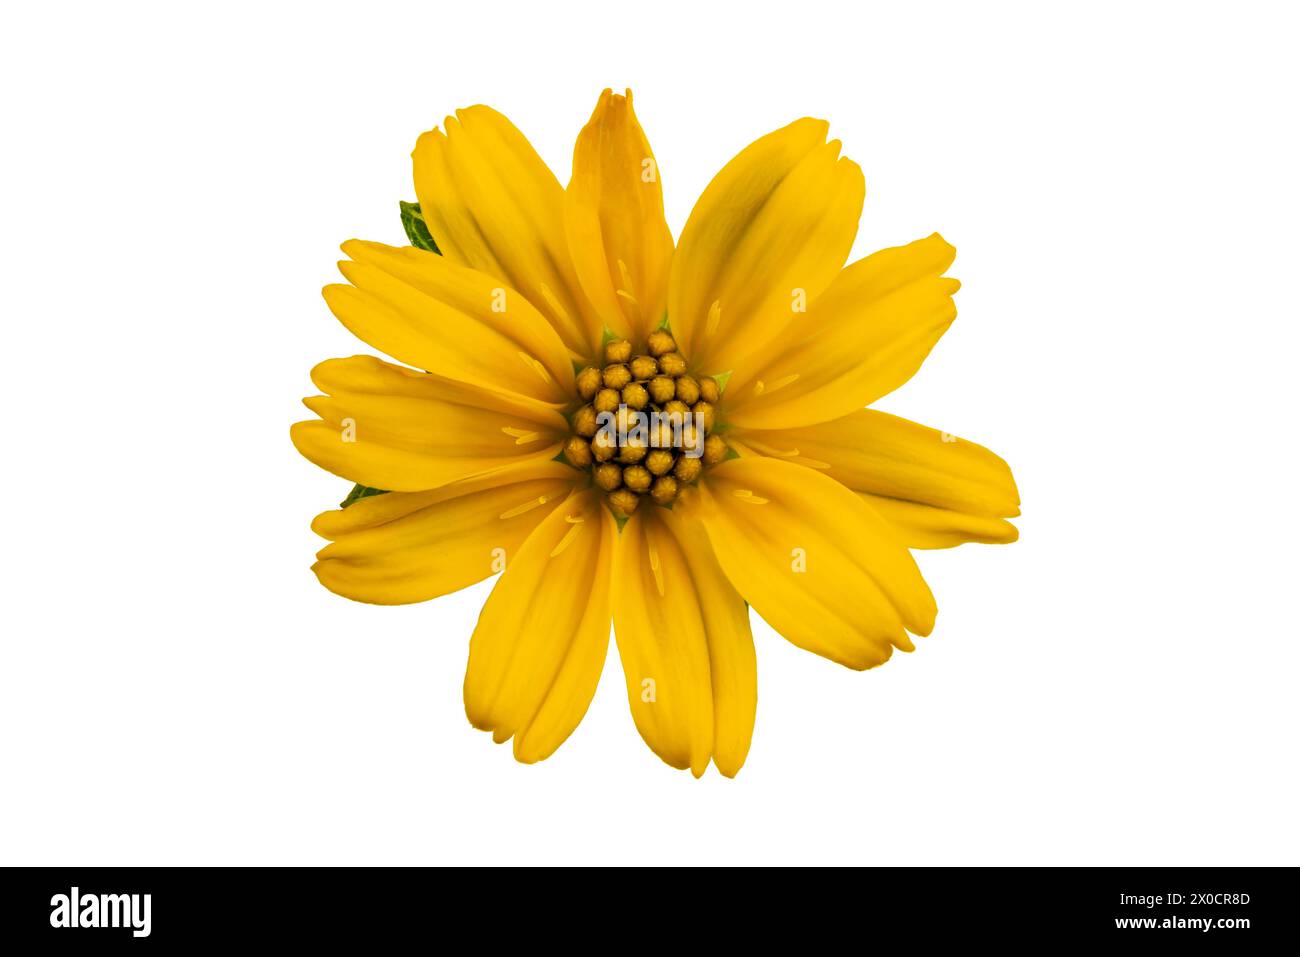 Vista superior de una sola flor de la estrella amarilla pequeña o Singapur Daisy aislado sobre fondo blanco con el camino de recorte. Foto de stock